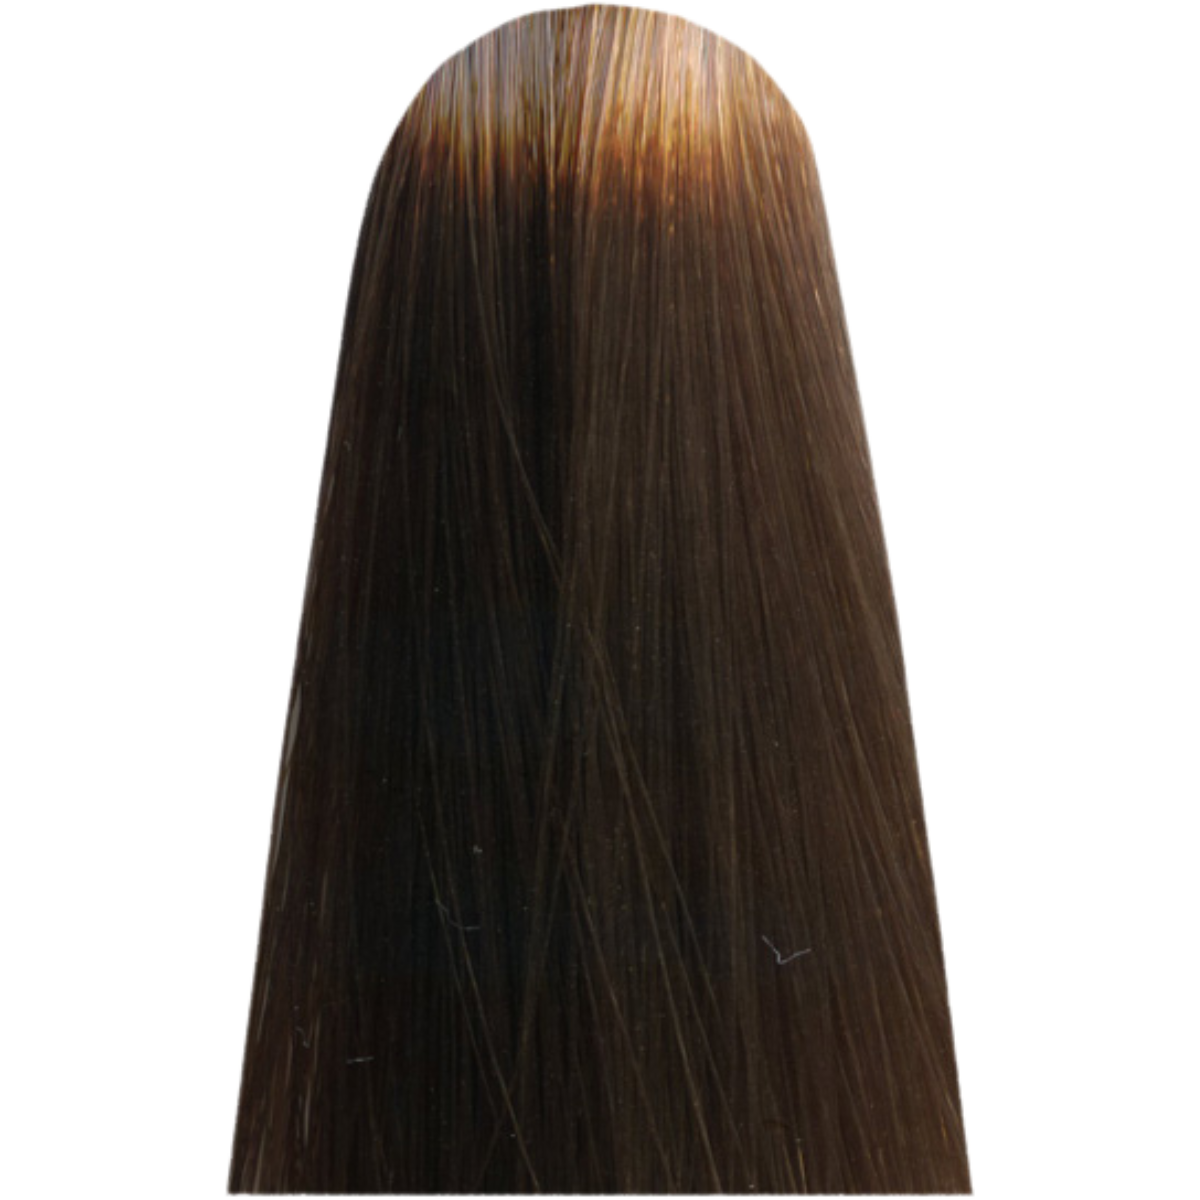 צבע שיער LIGHT.28 CHERRY SAND מוקה MOCHA מג`ירל בוהק MAJIREL GLOW צבע לשיער לוריאל 50 גרם